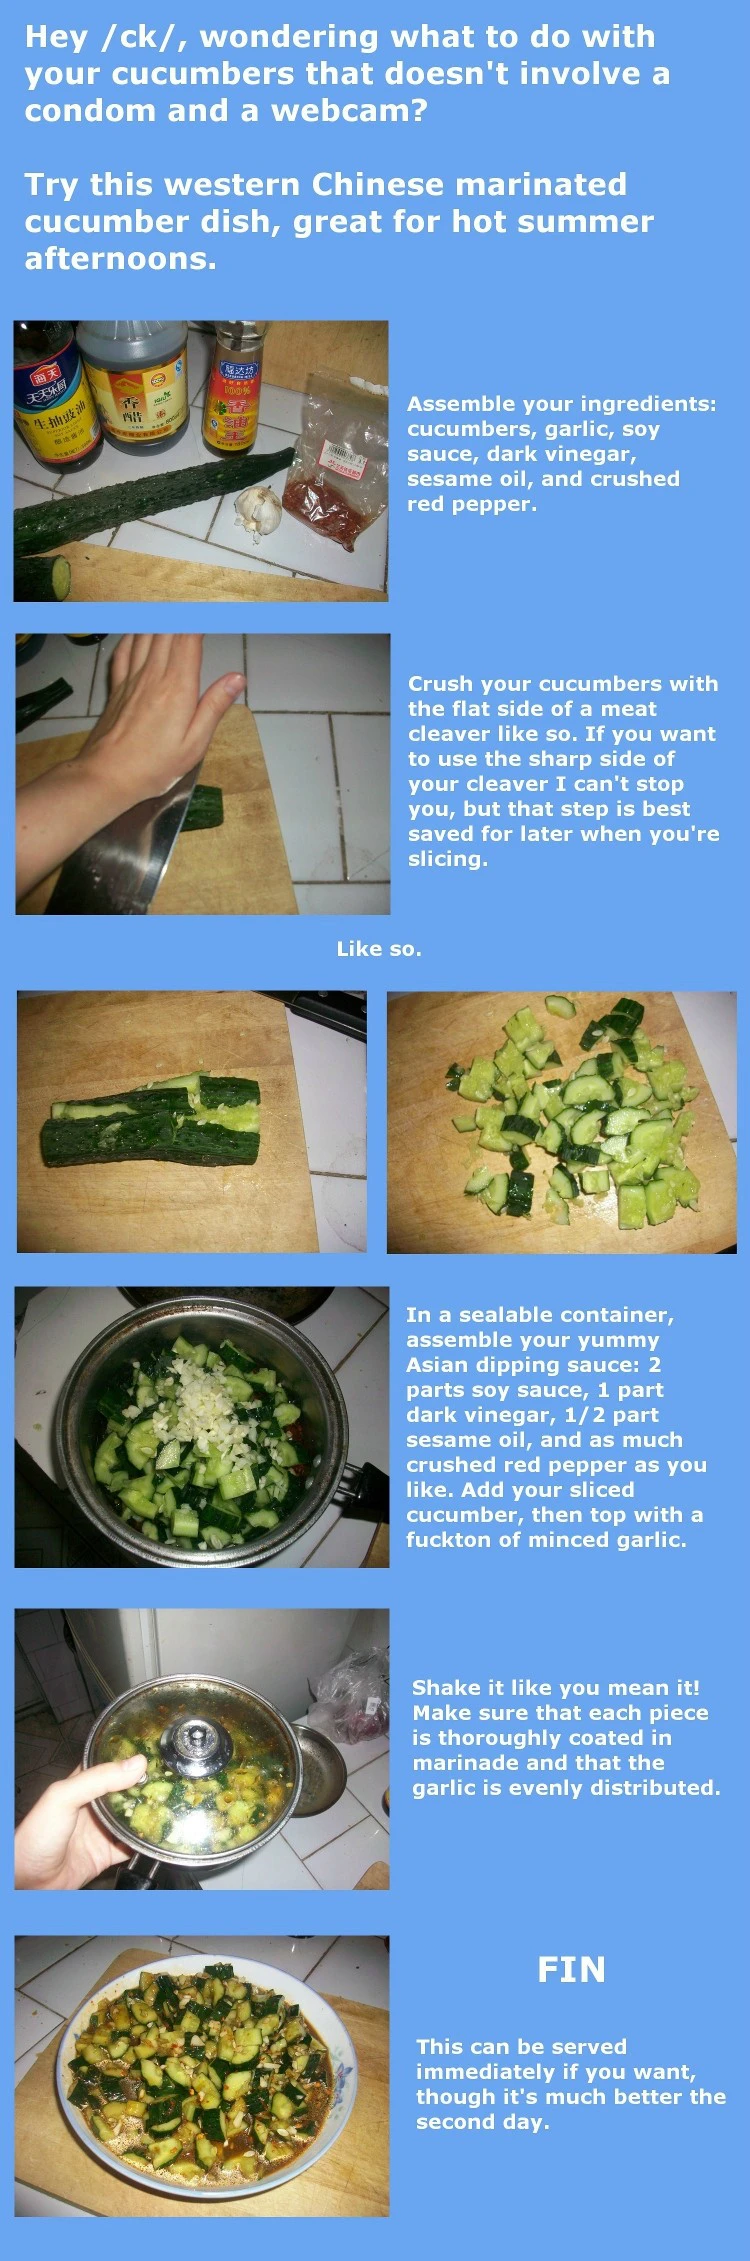 /fit/ recipe - Marinated Cucumber